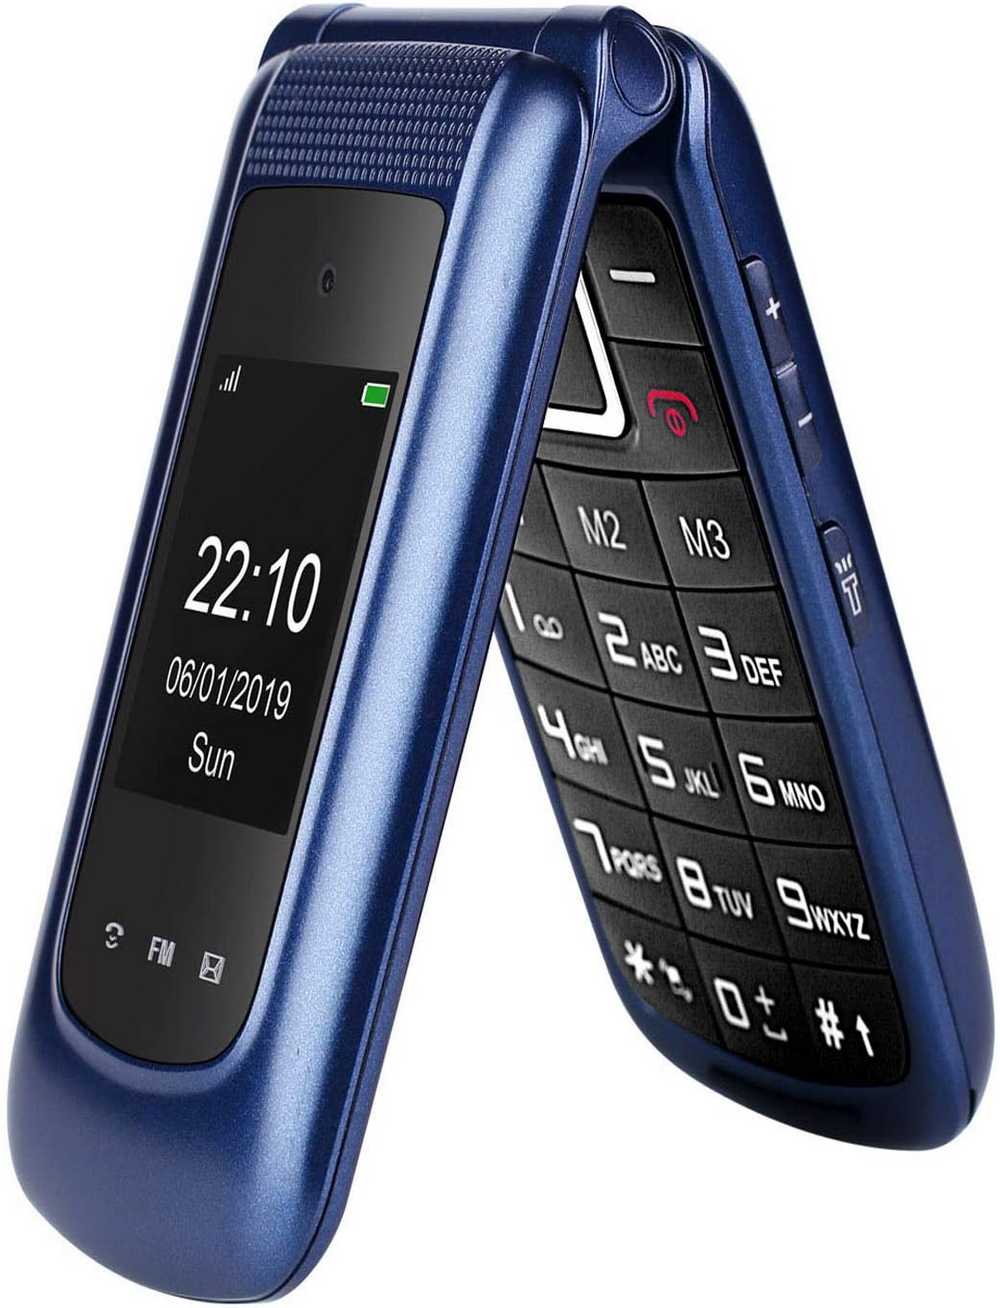 mobile-phone-for-seniors-uleway.jpg